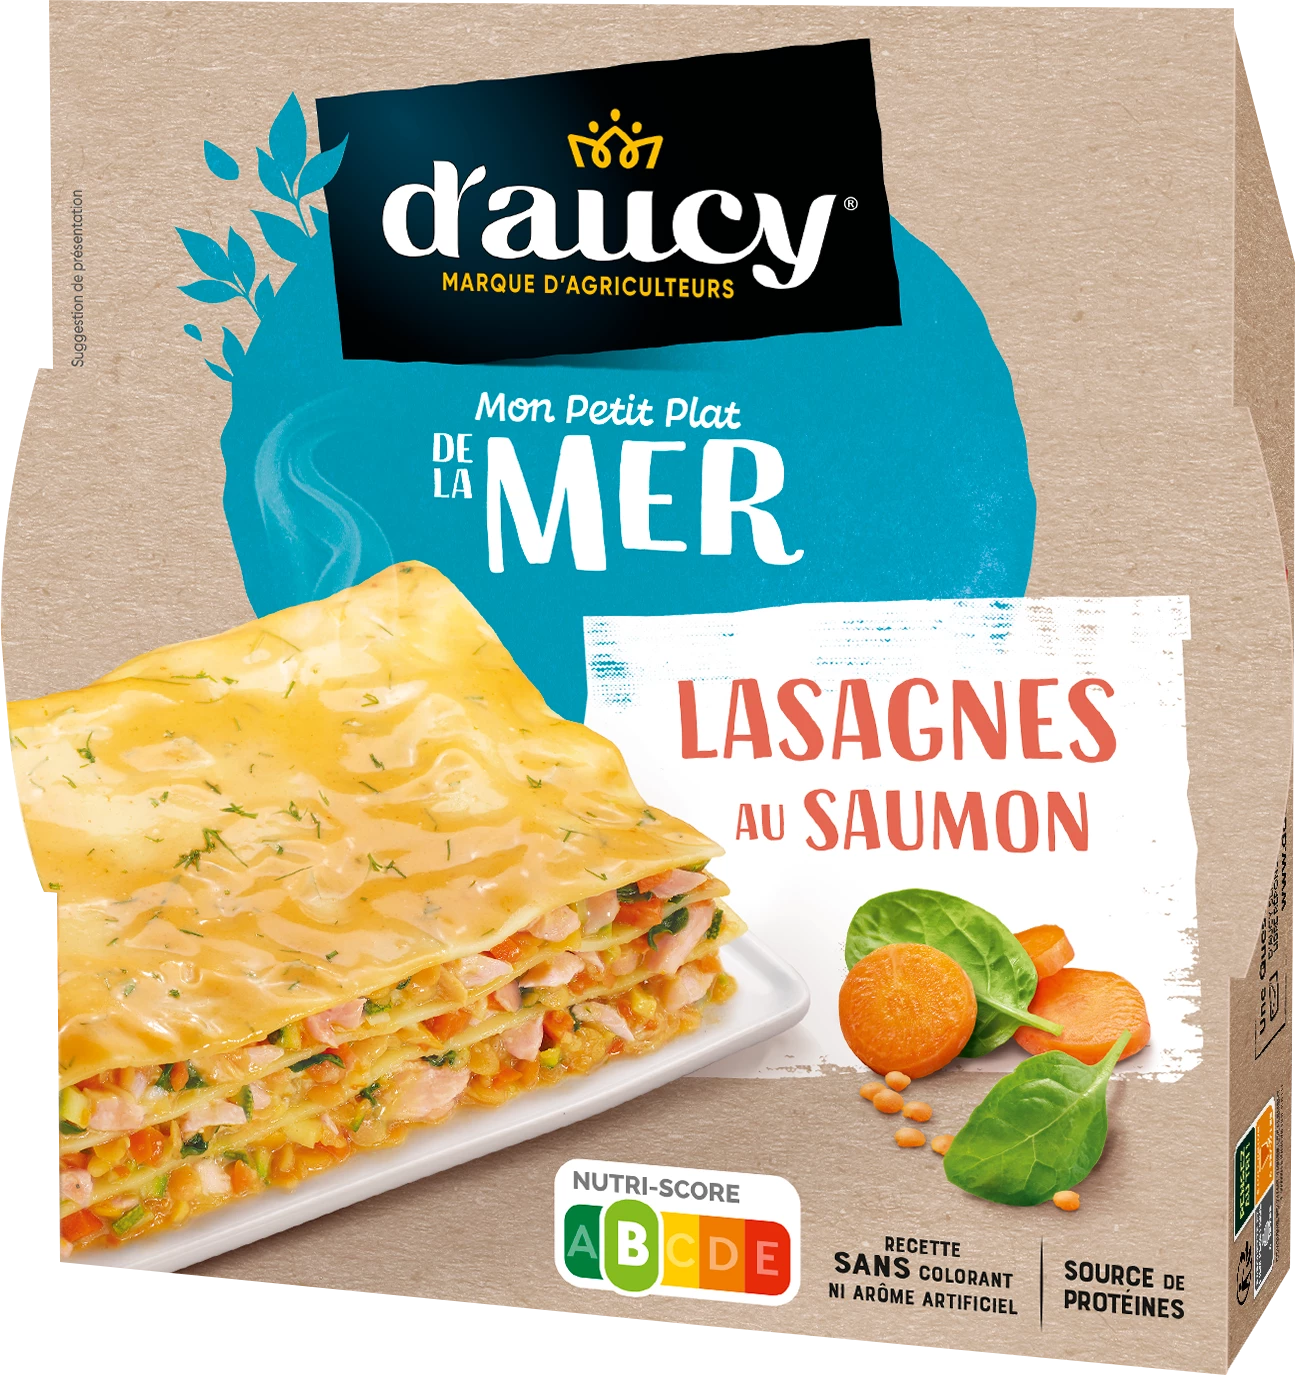 Salmon Lasagna, 300g - D'AUCY